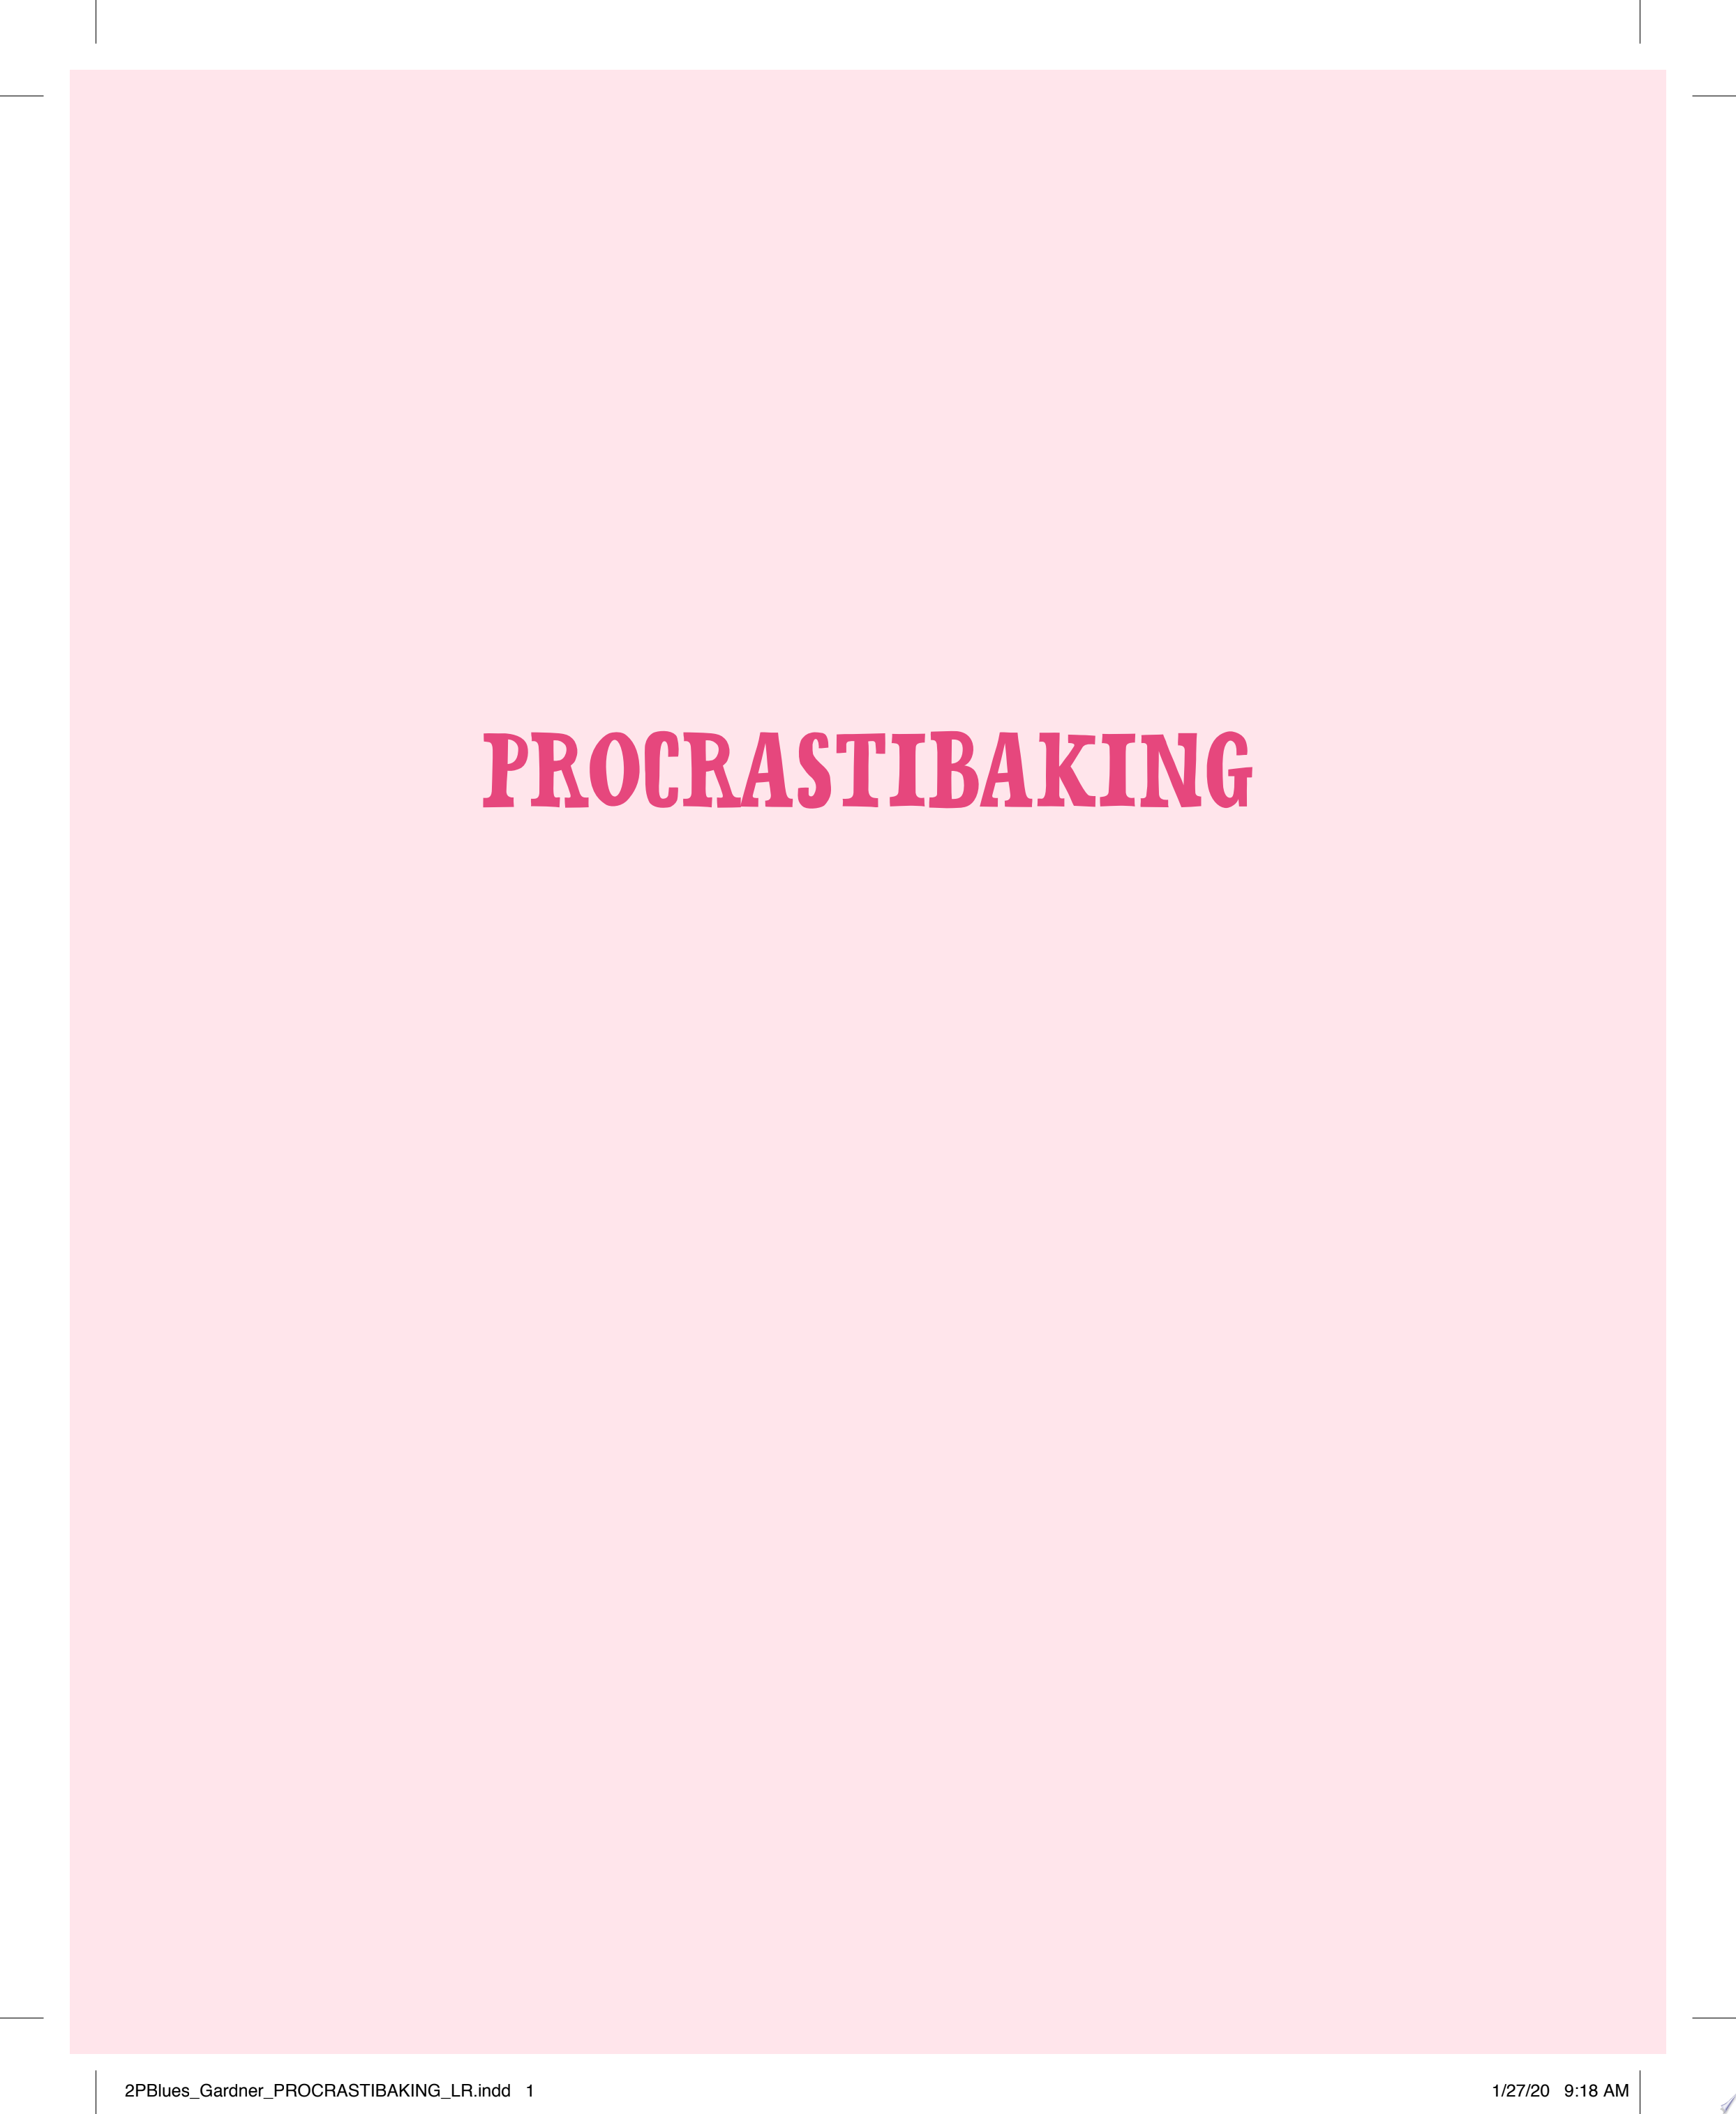 Image for "Procrastibaking"